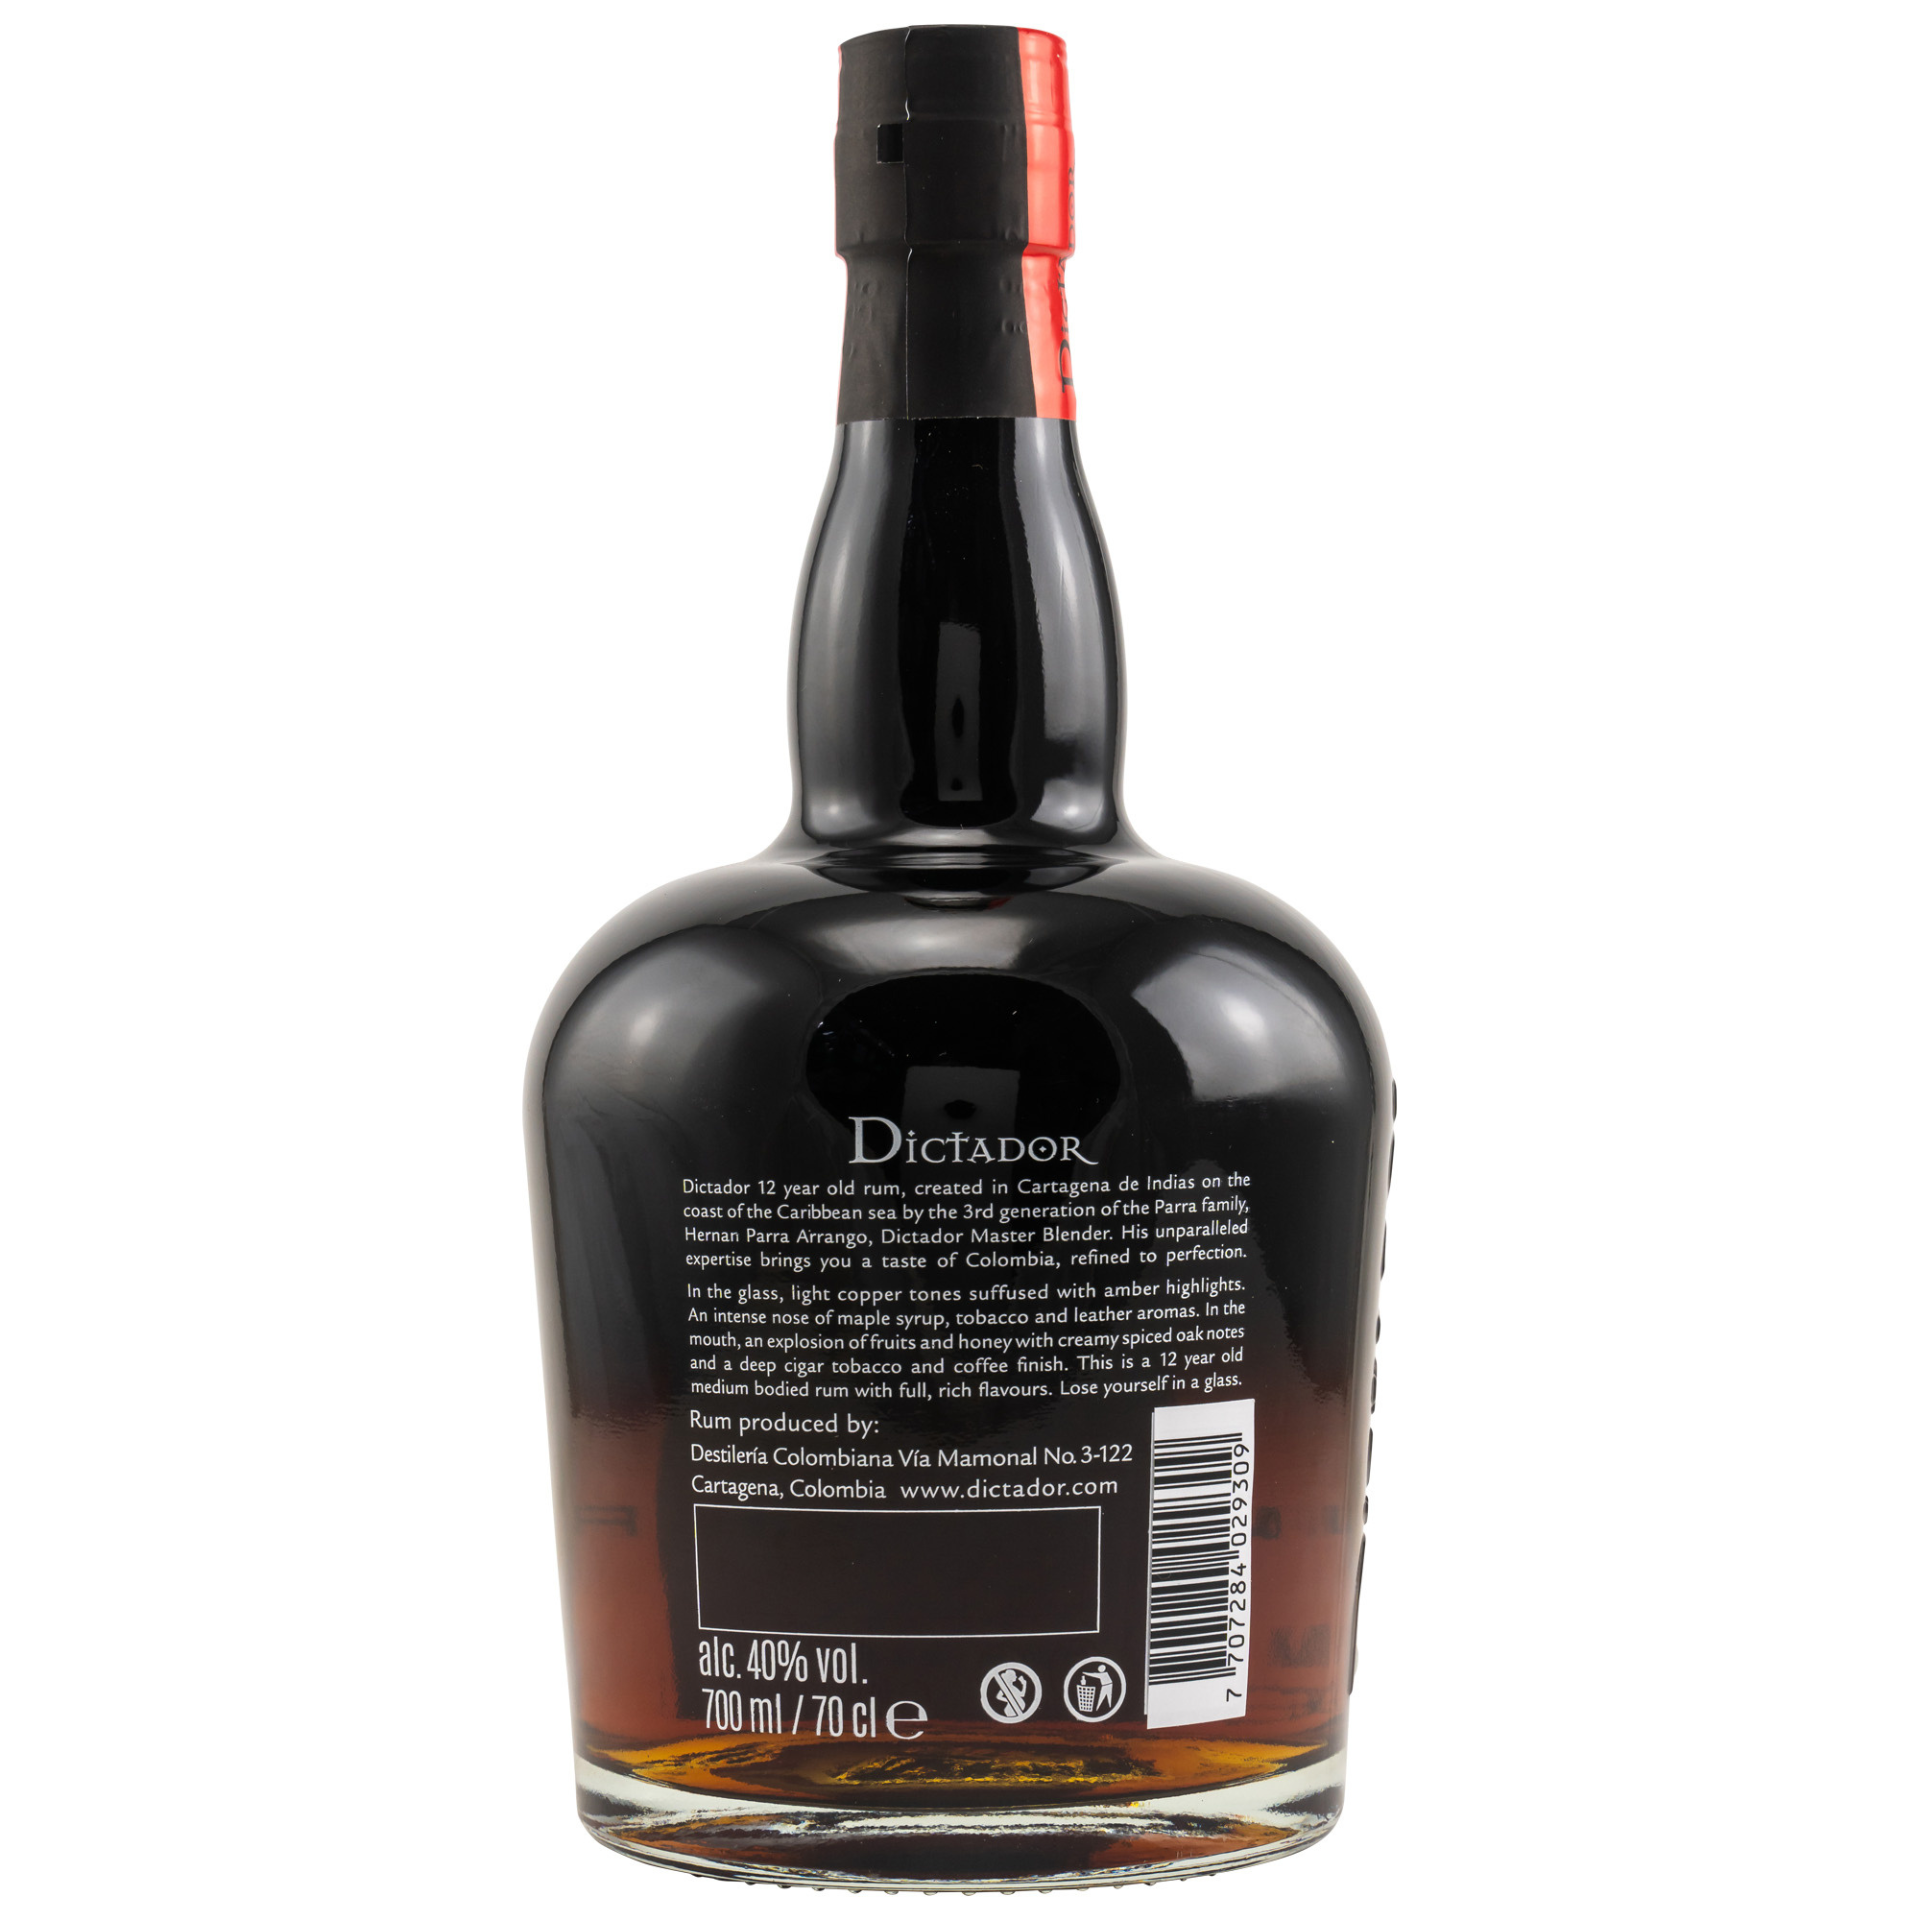 Dictador Rum 12 Jahre 40% 0,7l